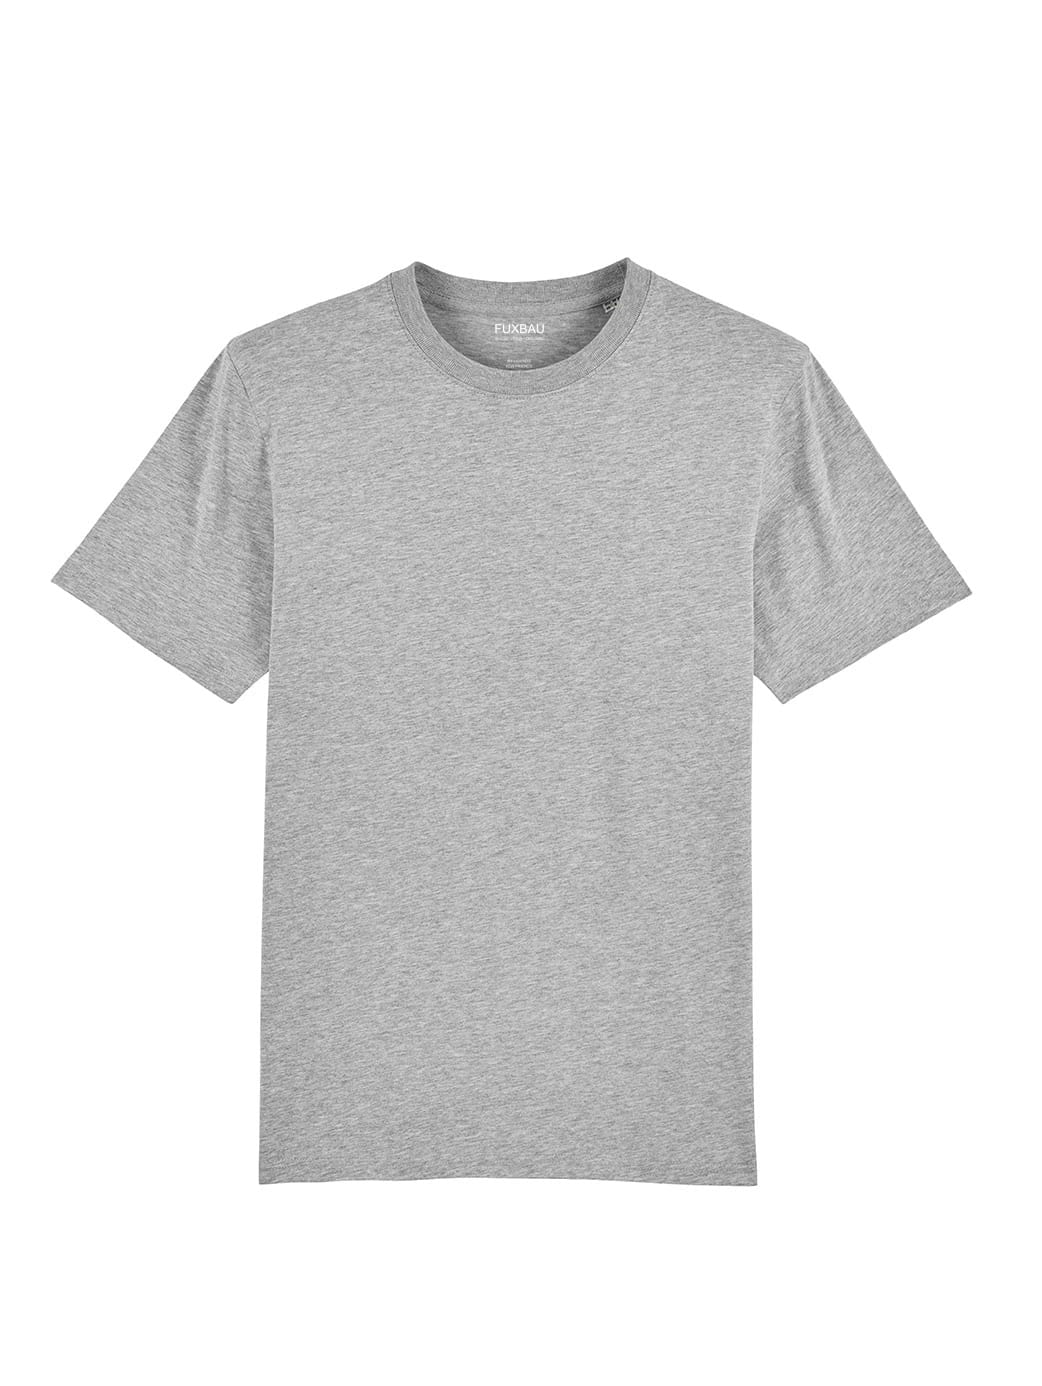 Faires und nachhaltiges schweres Basic T-Shirt von FUXBAU in grau aus 100% Biobaumwolle